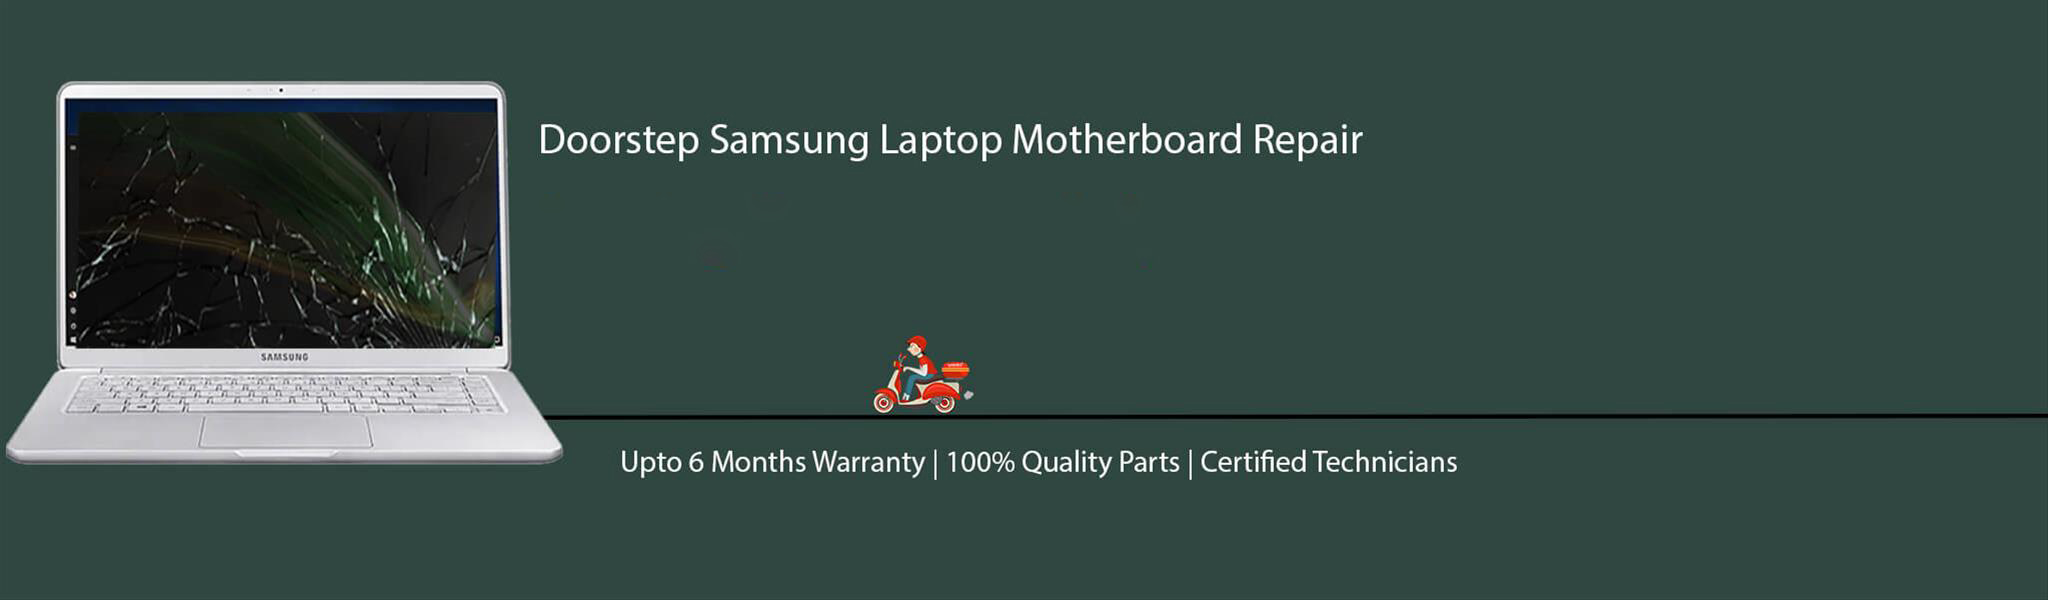 samsung-laptop-motherboard-repair.jpg